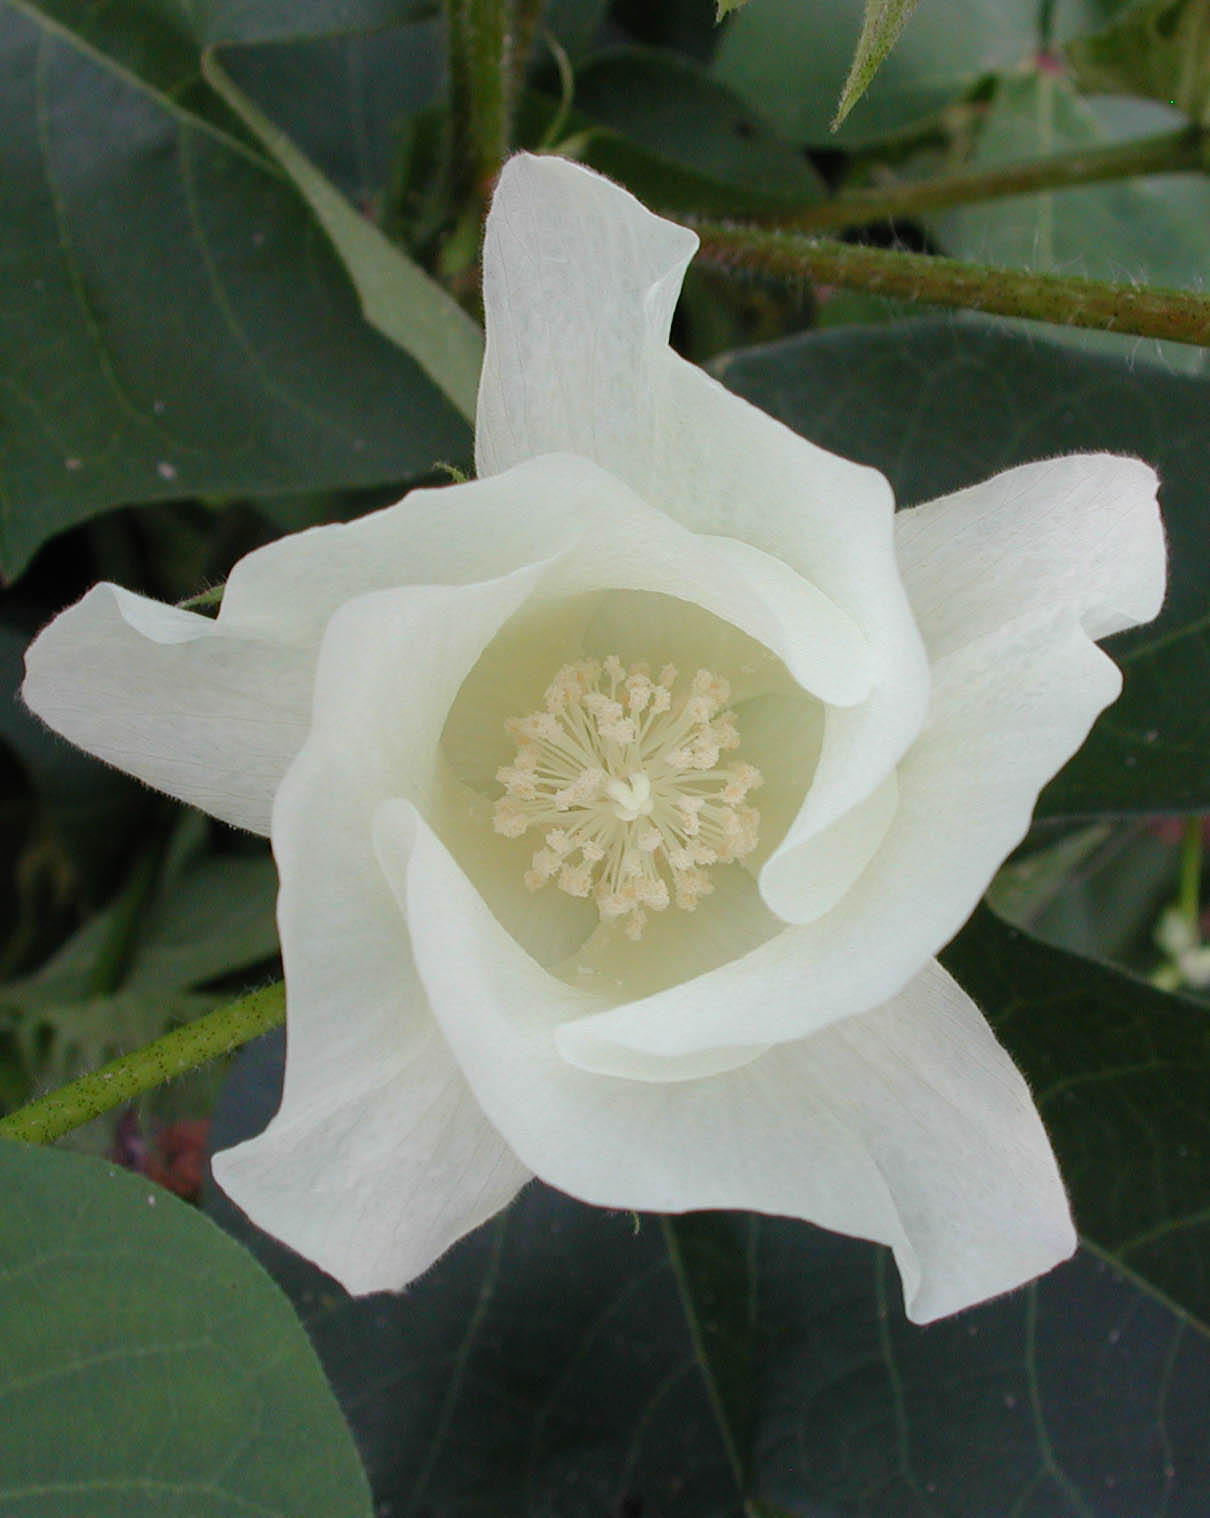 https://cotton.ces.ncsu.edu/wp-content/uploads/2020/02/cotton-bloom-flower-5053.jpg